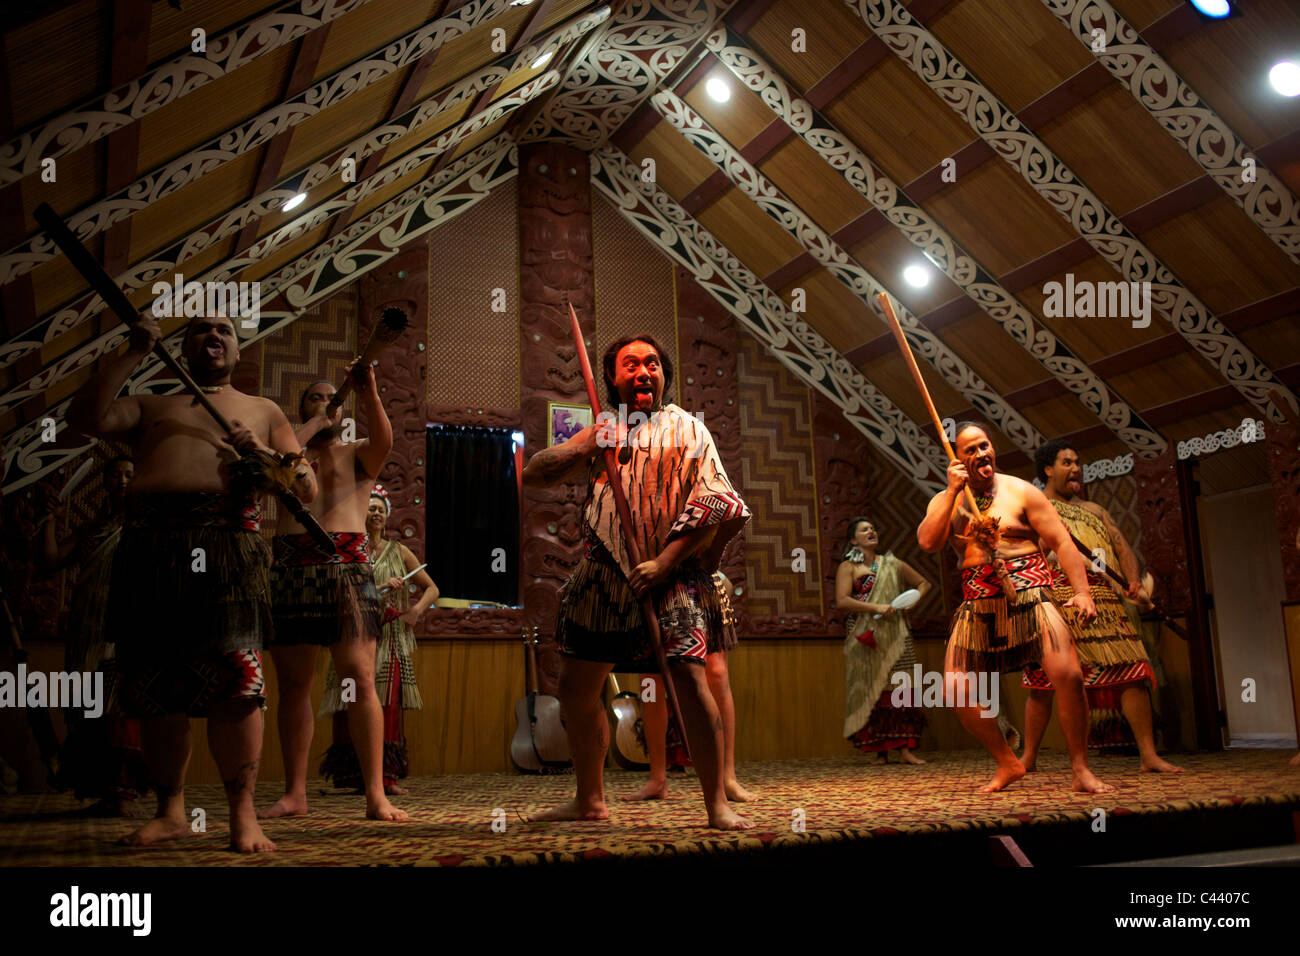 A Maori Cultural Performances at Te Puia, Maori Arts and Crafts ...